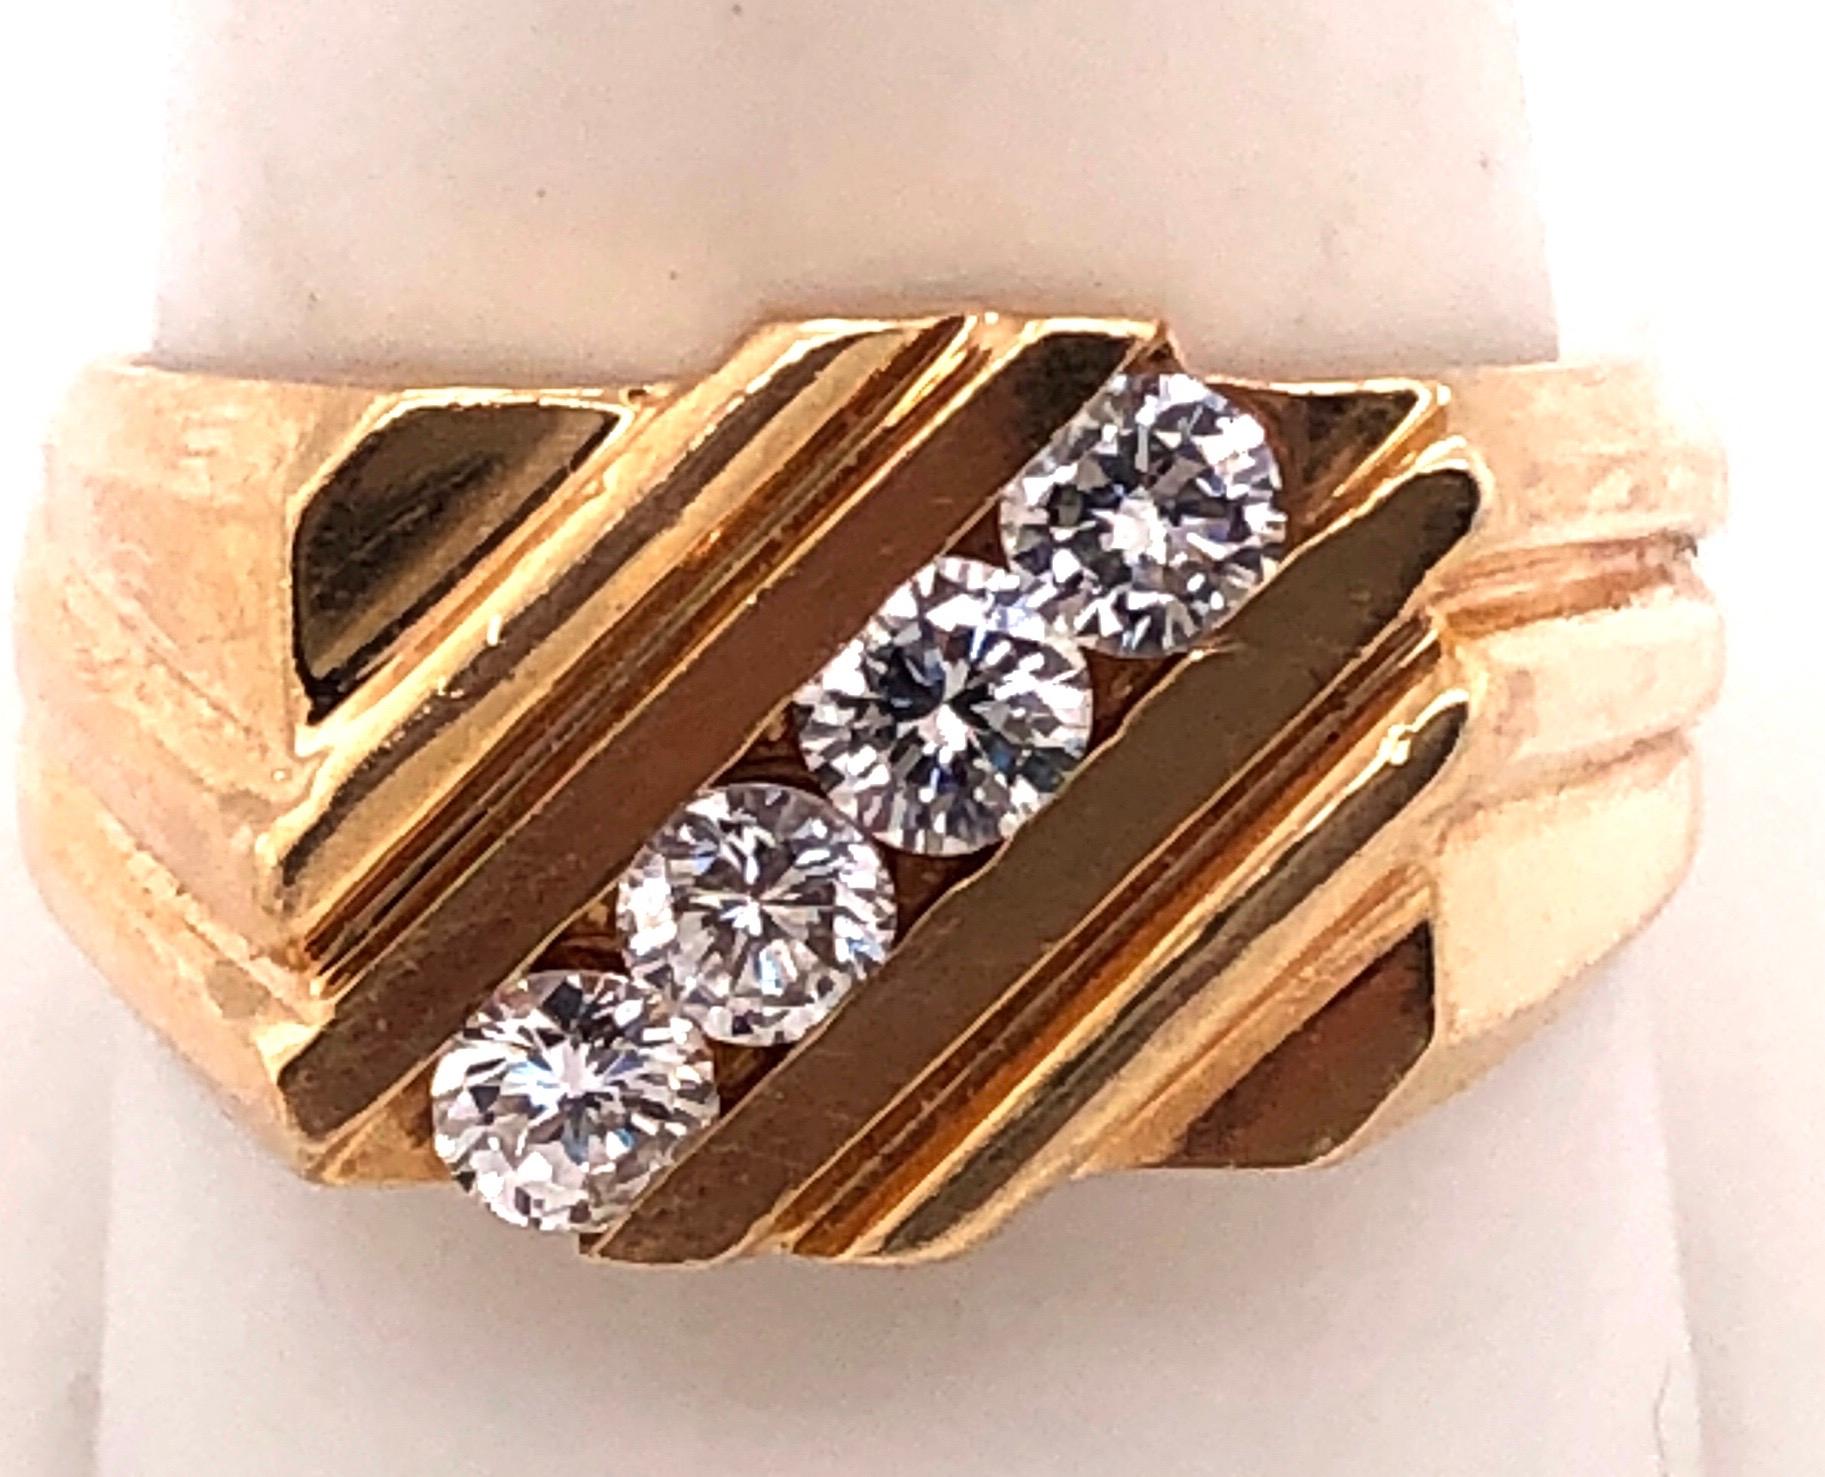 14Kt Gelbgold Free Form Ring mit vier Diamanten 0,60 Gesamtgewicht der Diamanten
Größe 10,5 mit 9,1 Gramm Gesamtgewicht.

